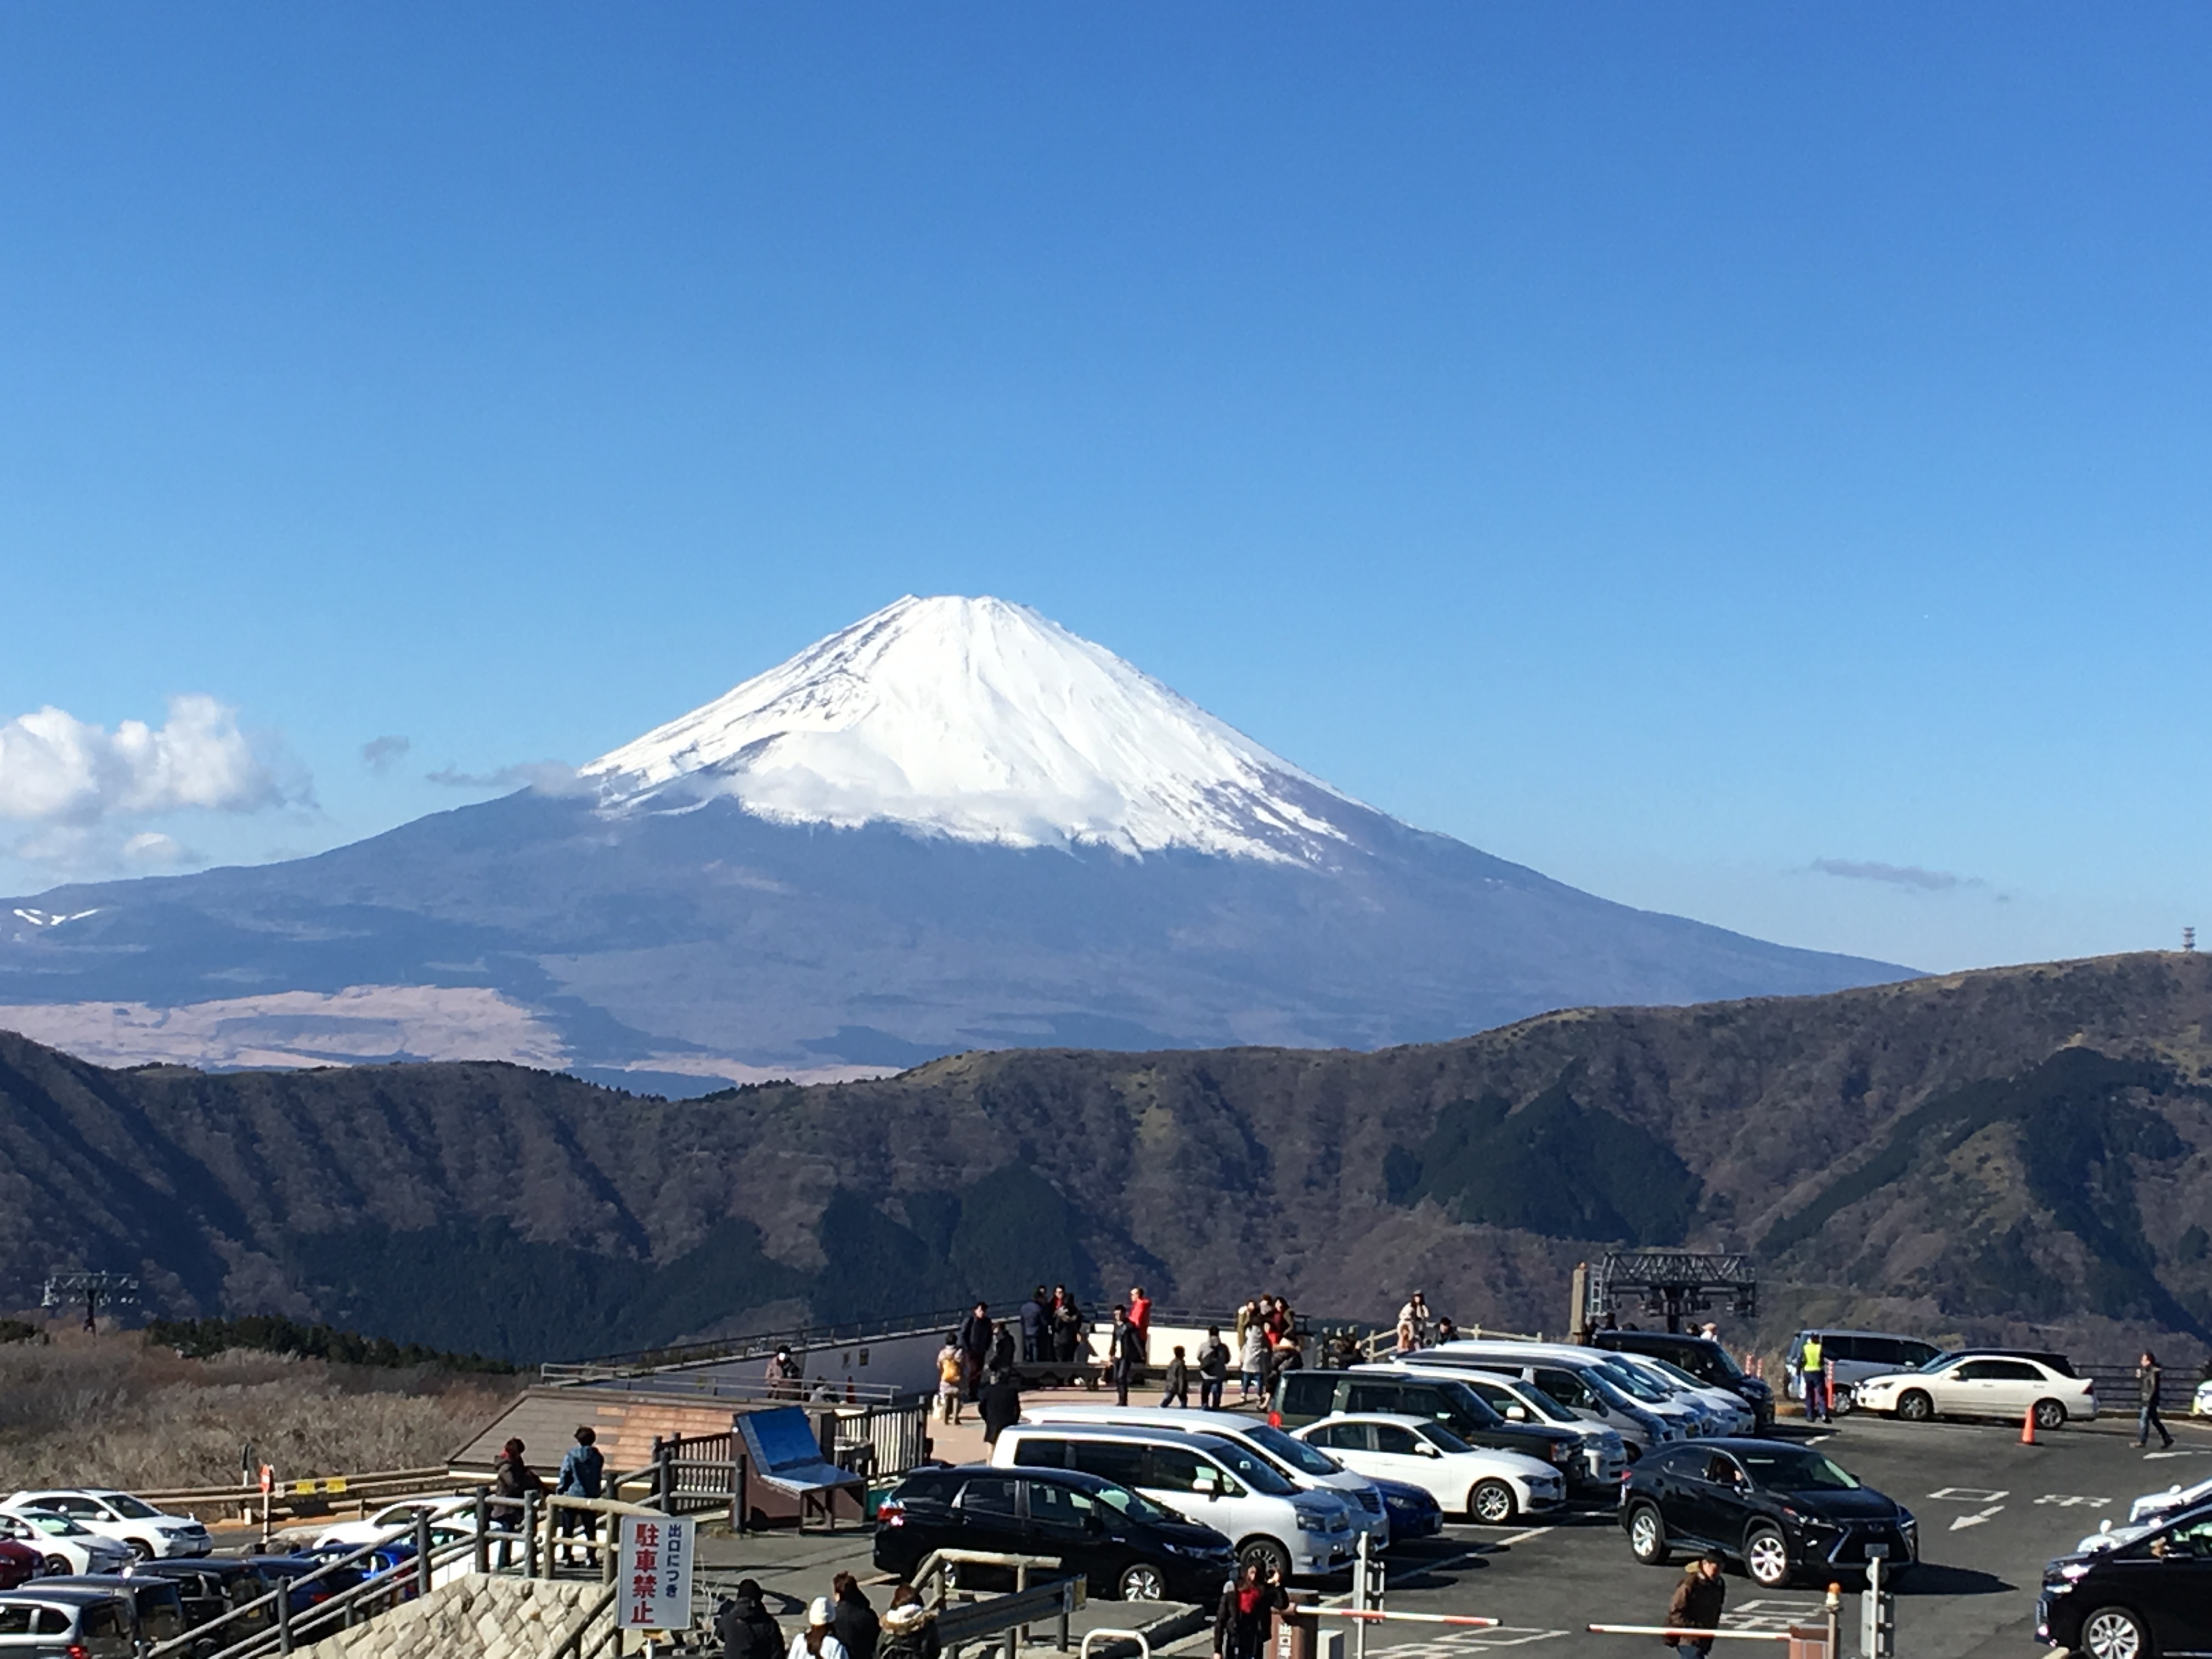 Mt. Fuji from Owakudani